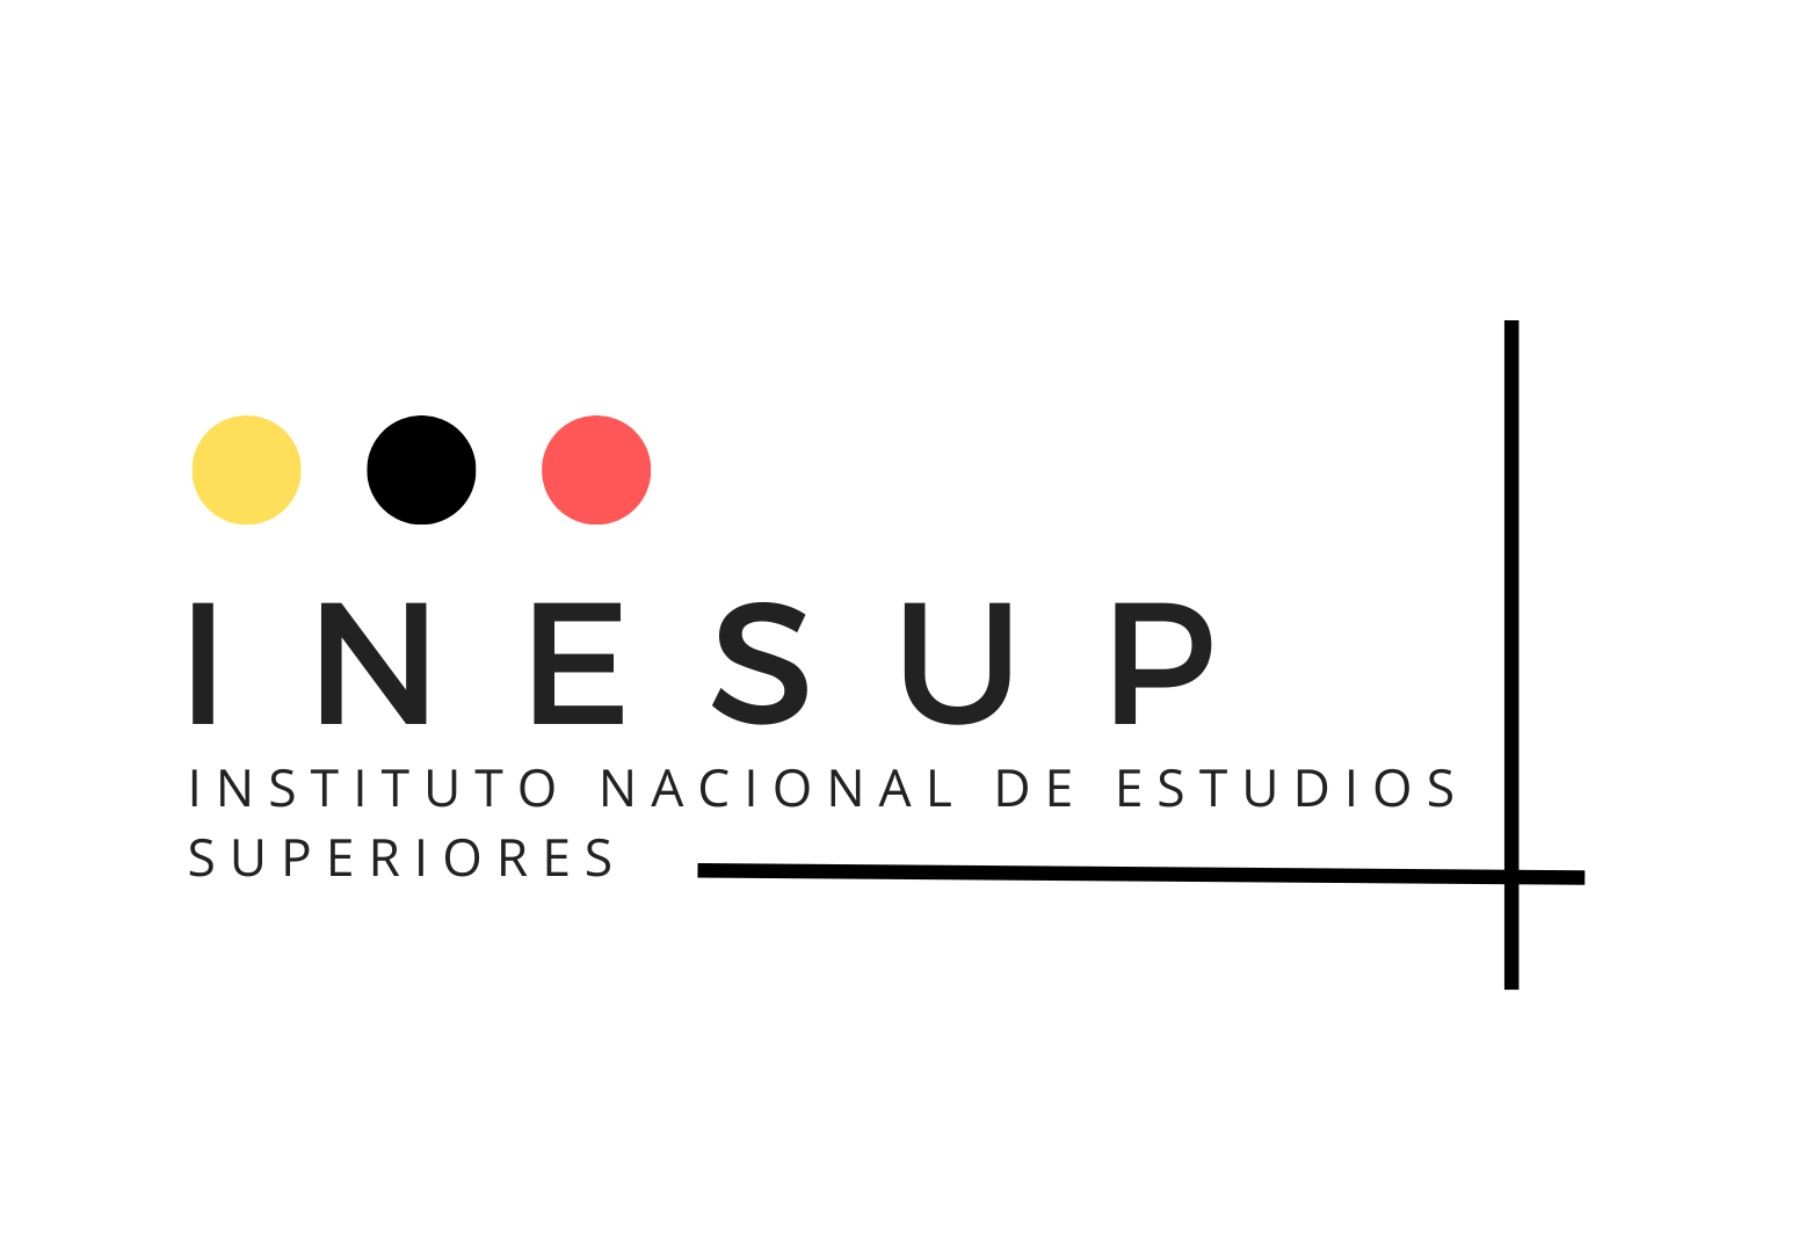 Inesup - Instituto Nacional de Estudios Superiores